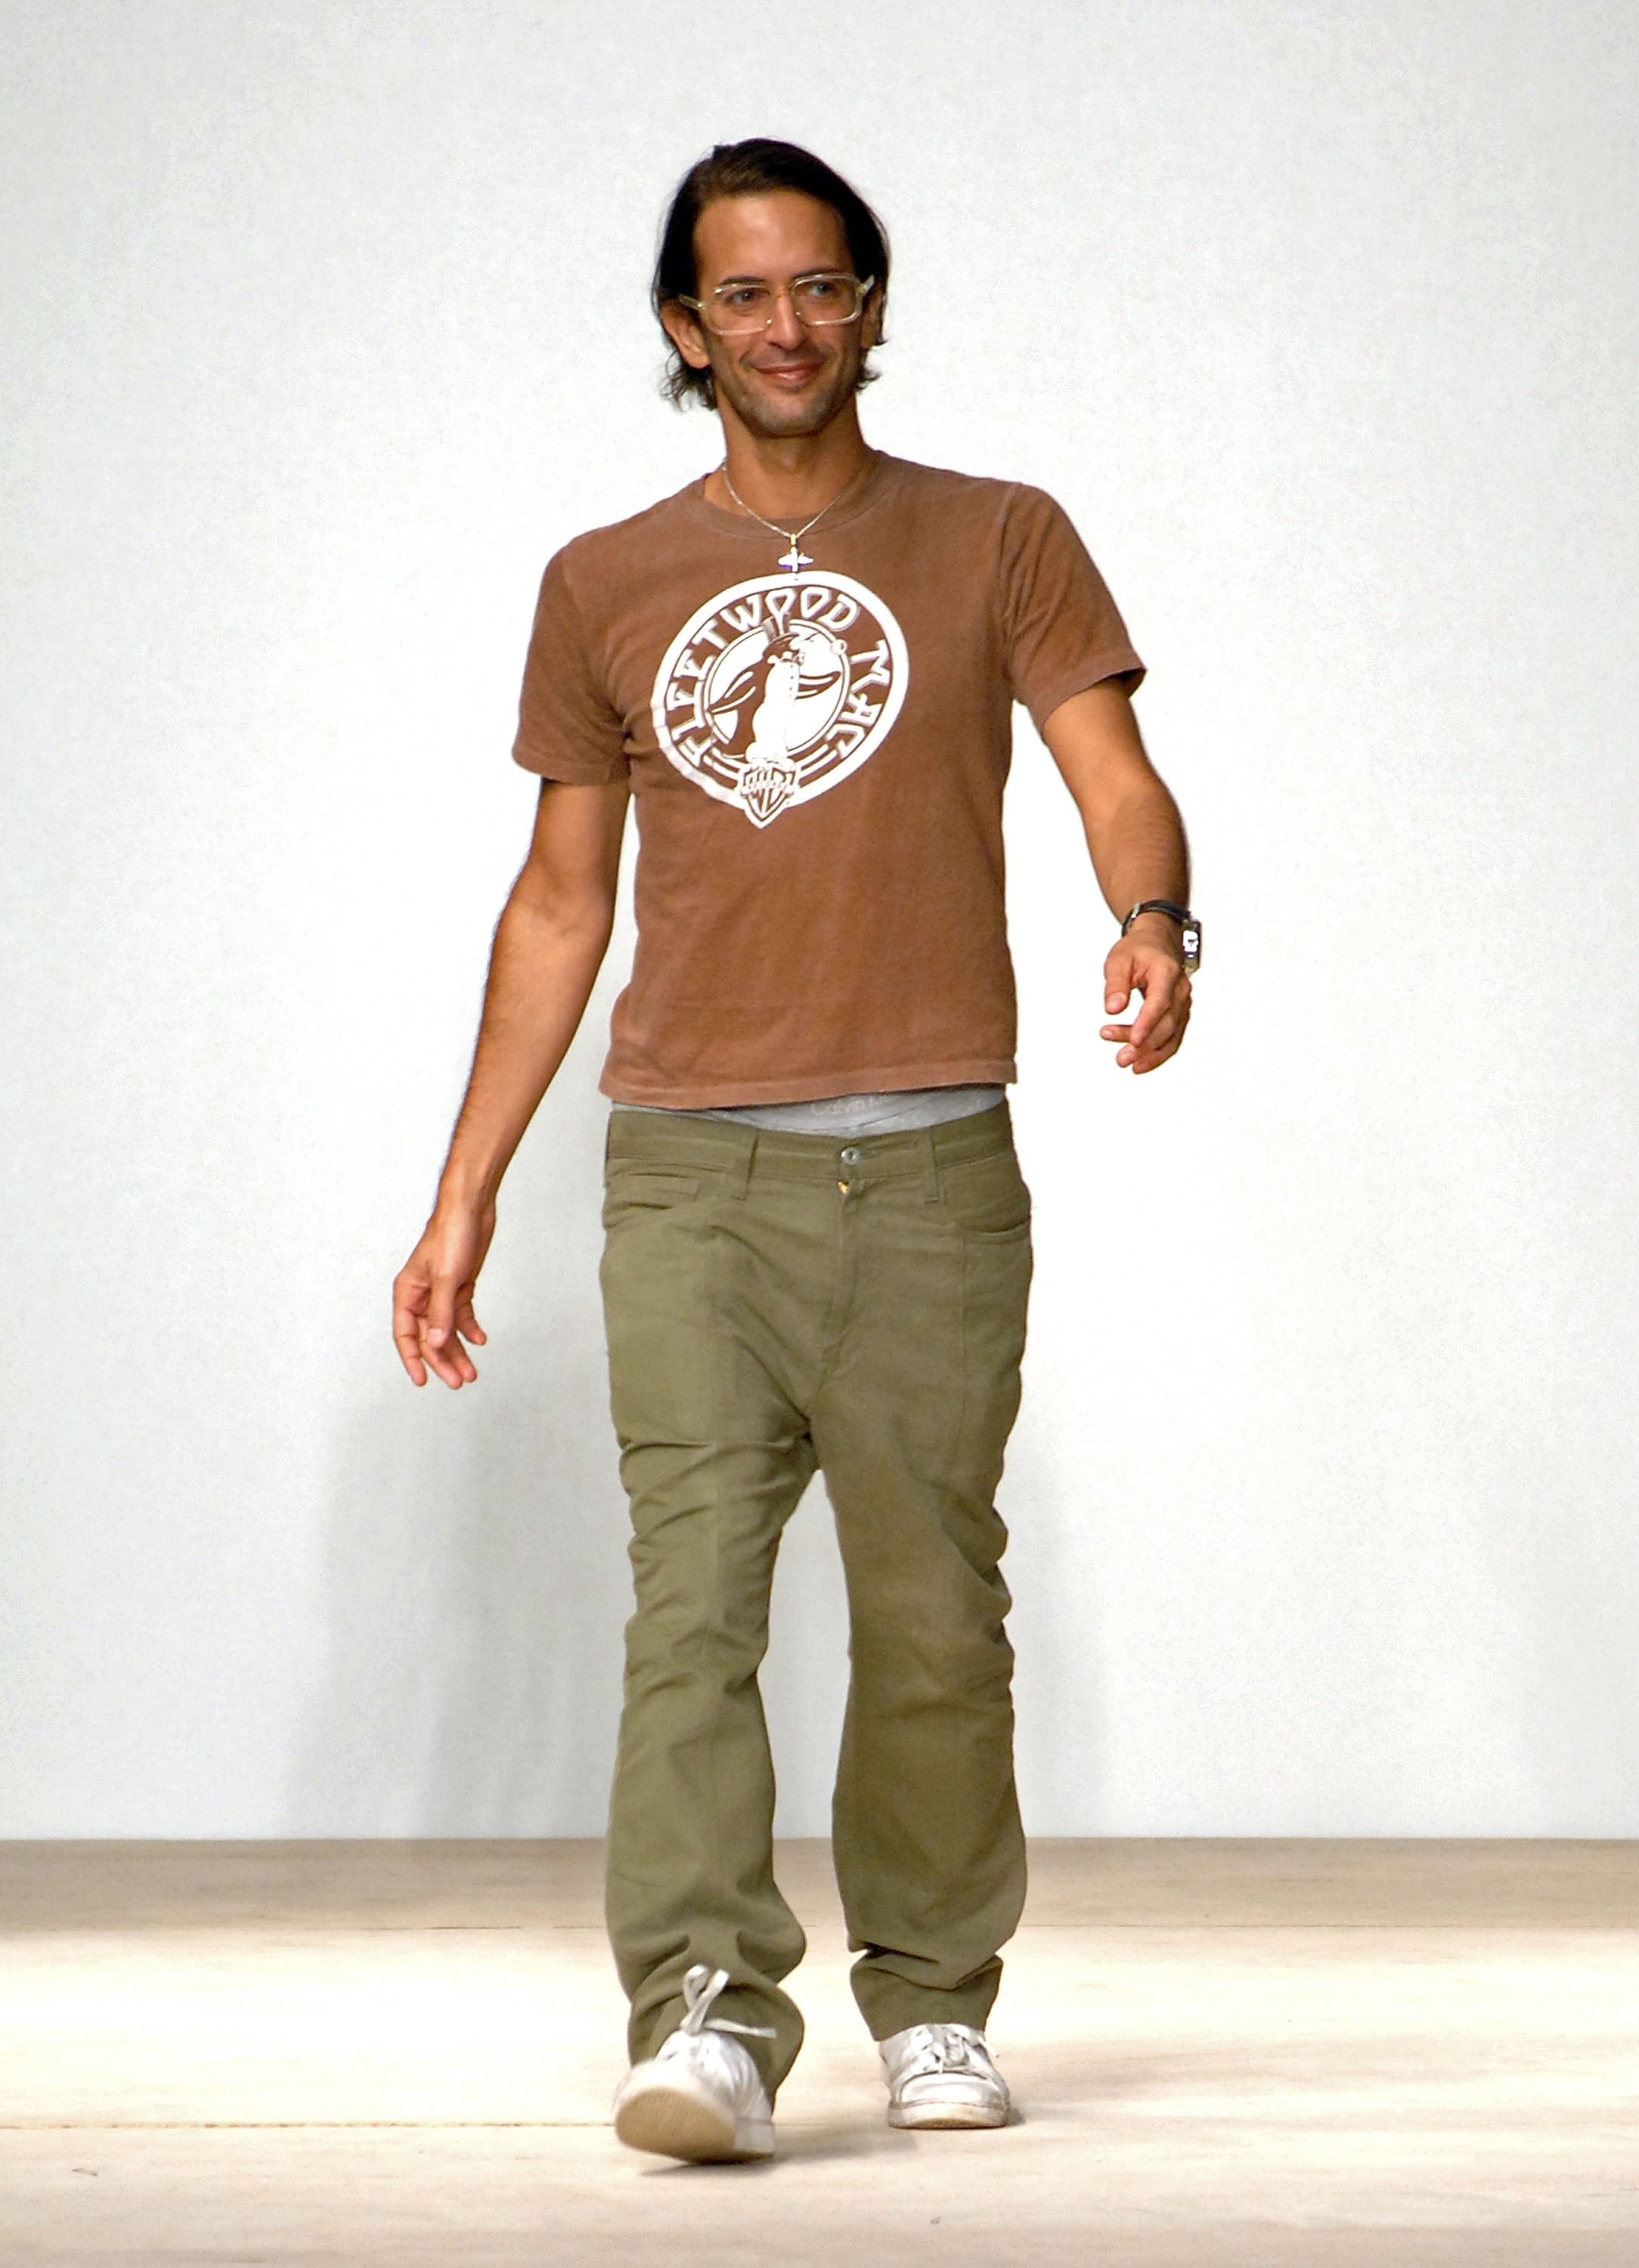 Marc na virada para versão fitness em 2007 (Foto: Getty Images)